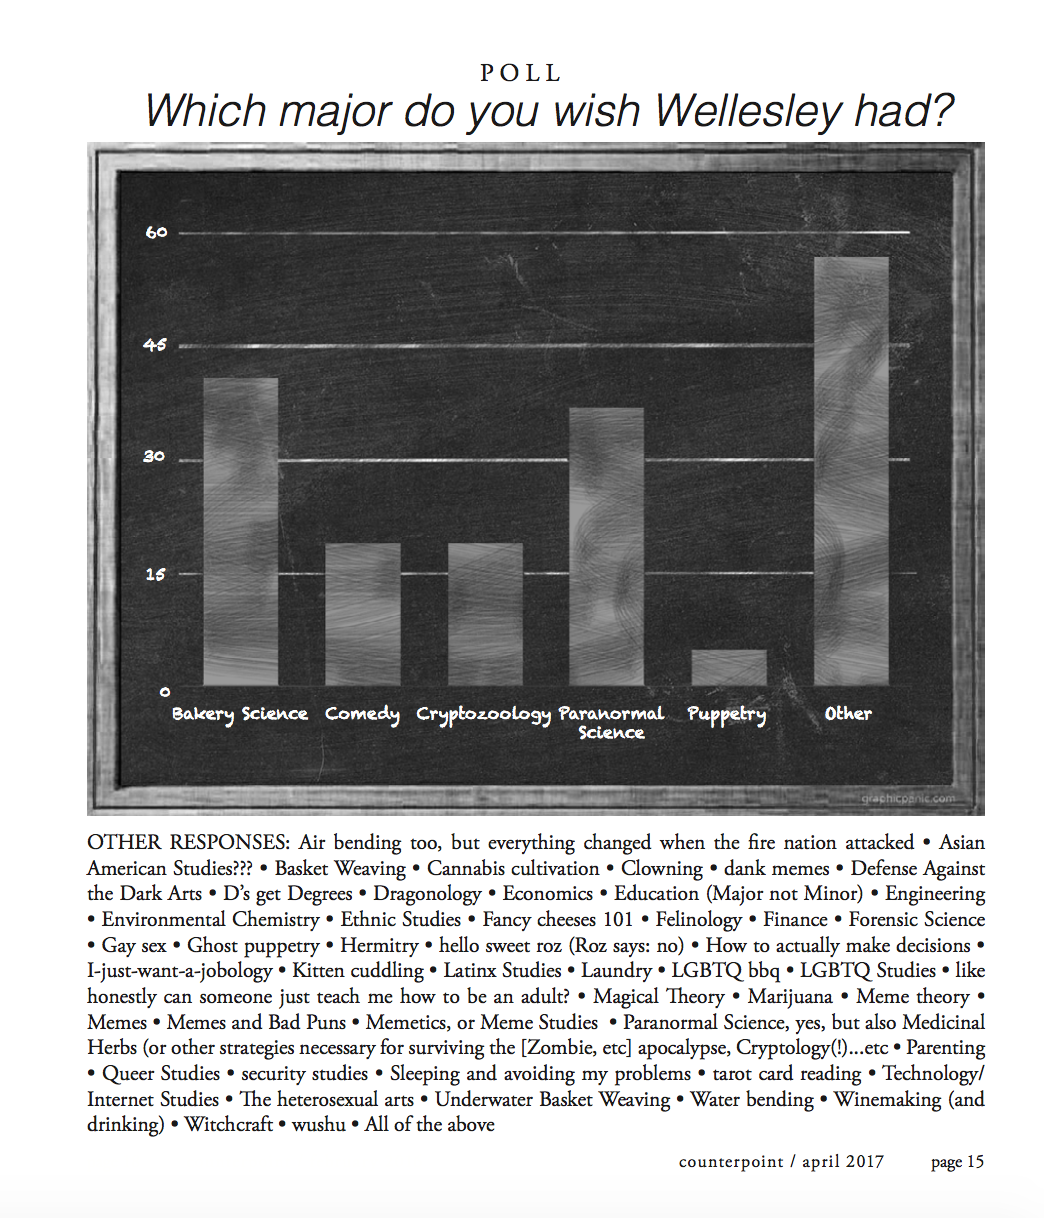 What major do you wish Wellesley had?